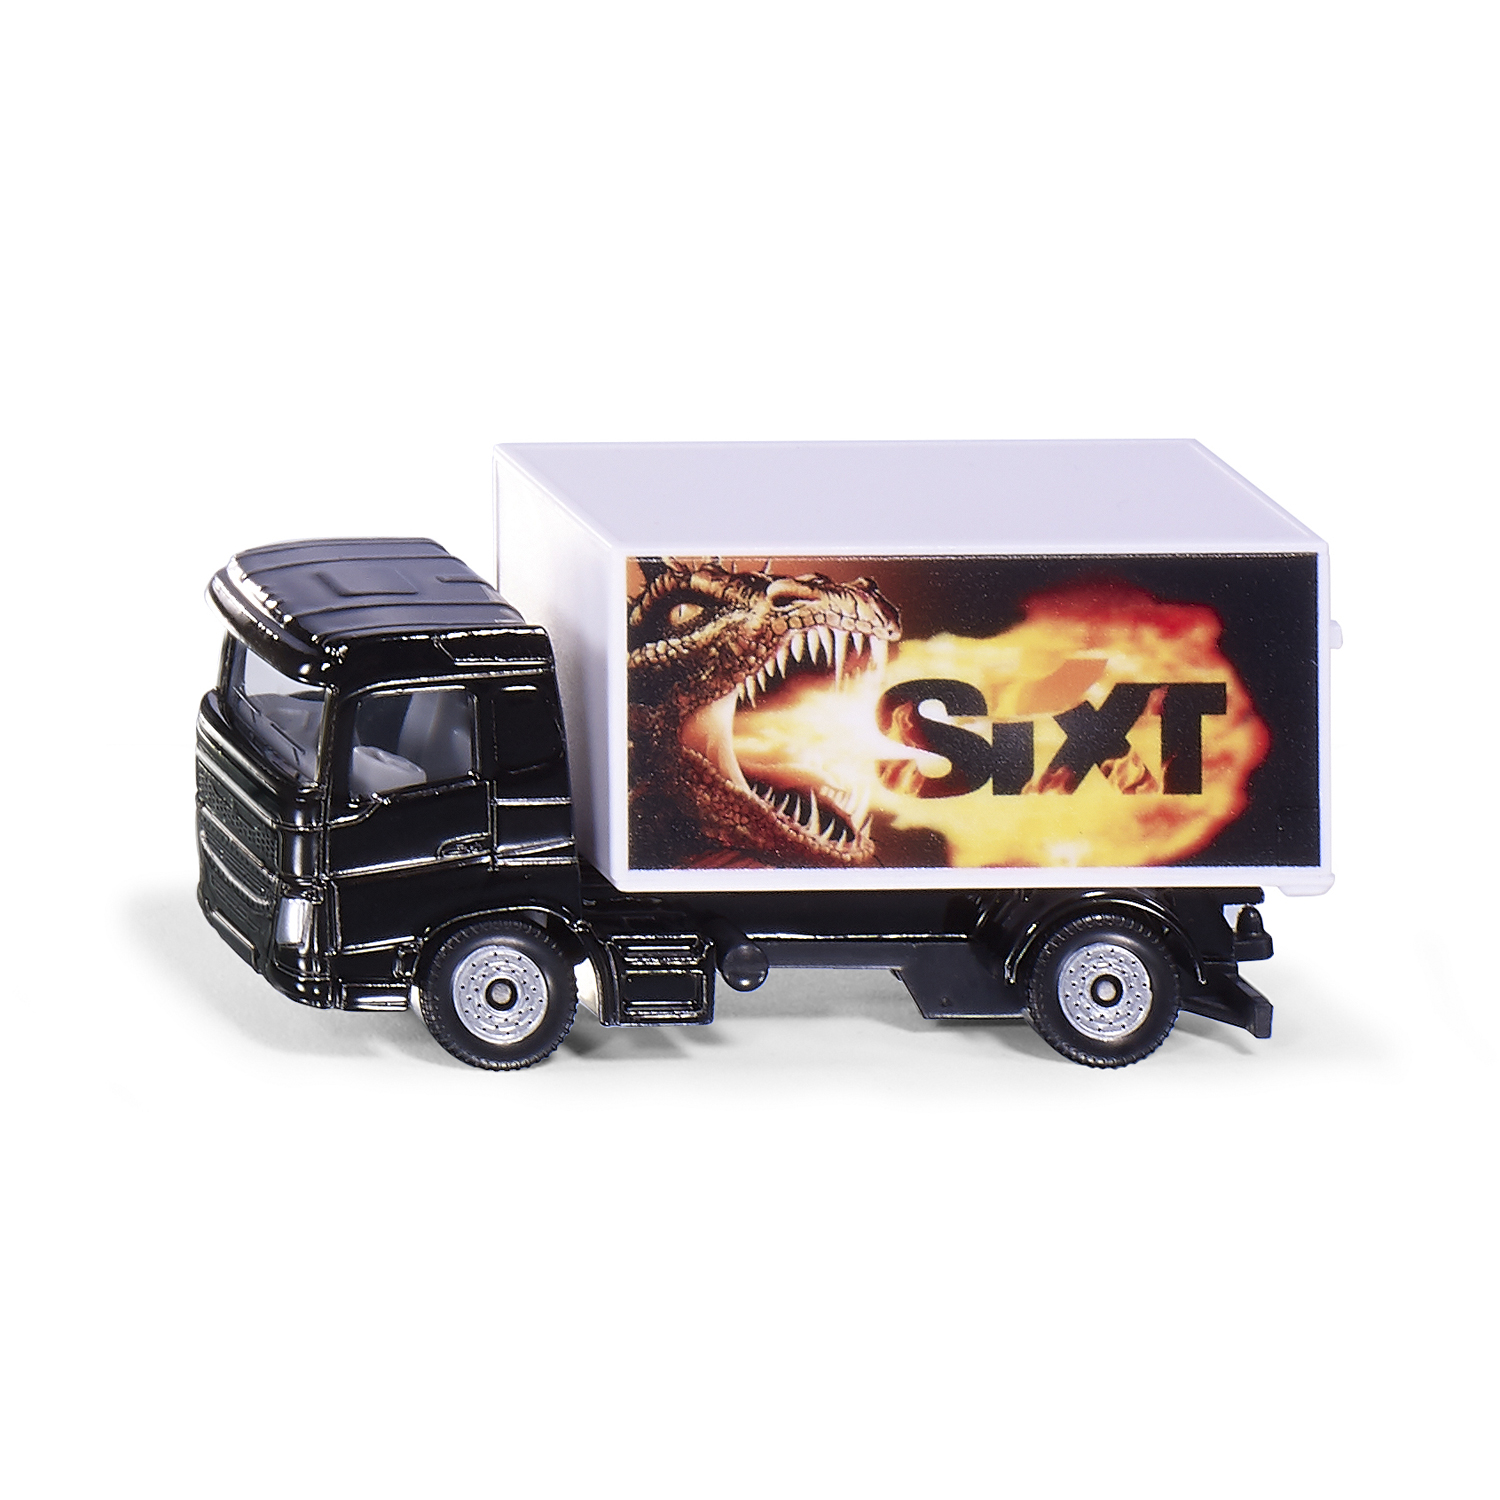 Kuorma-autot truck with box body sixt